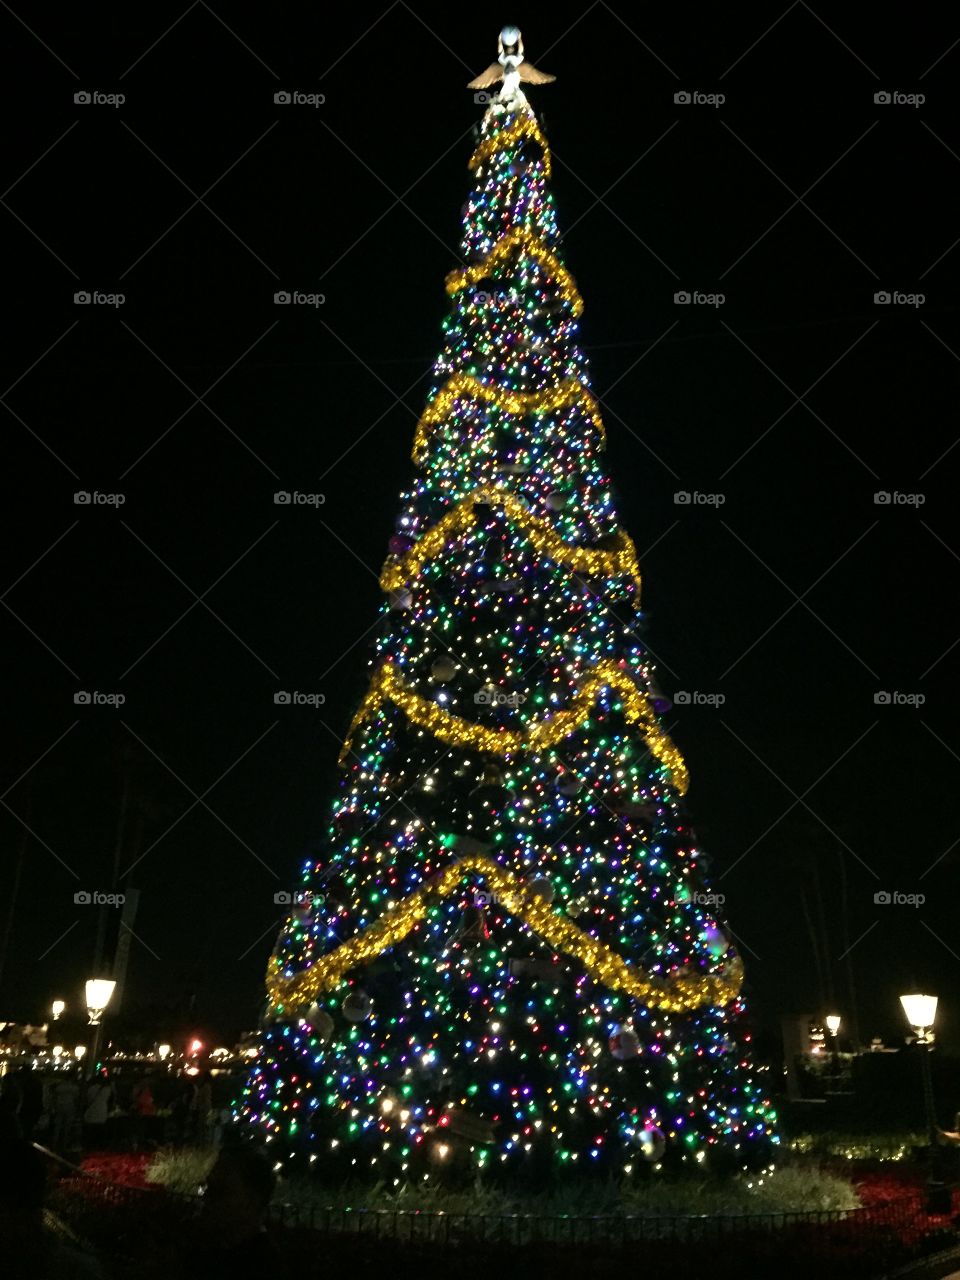 Epcot Christmas tree